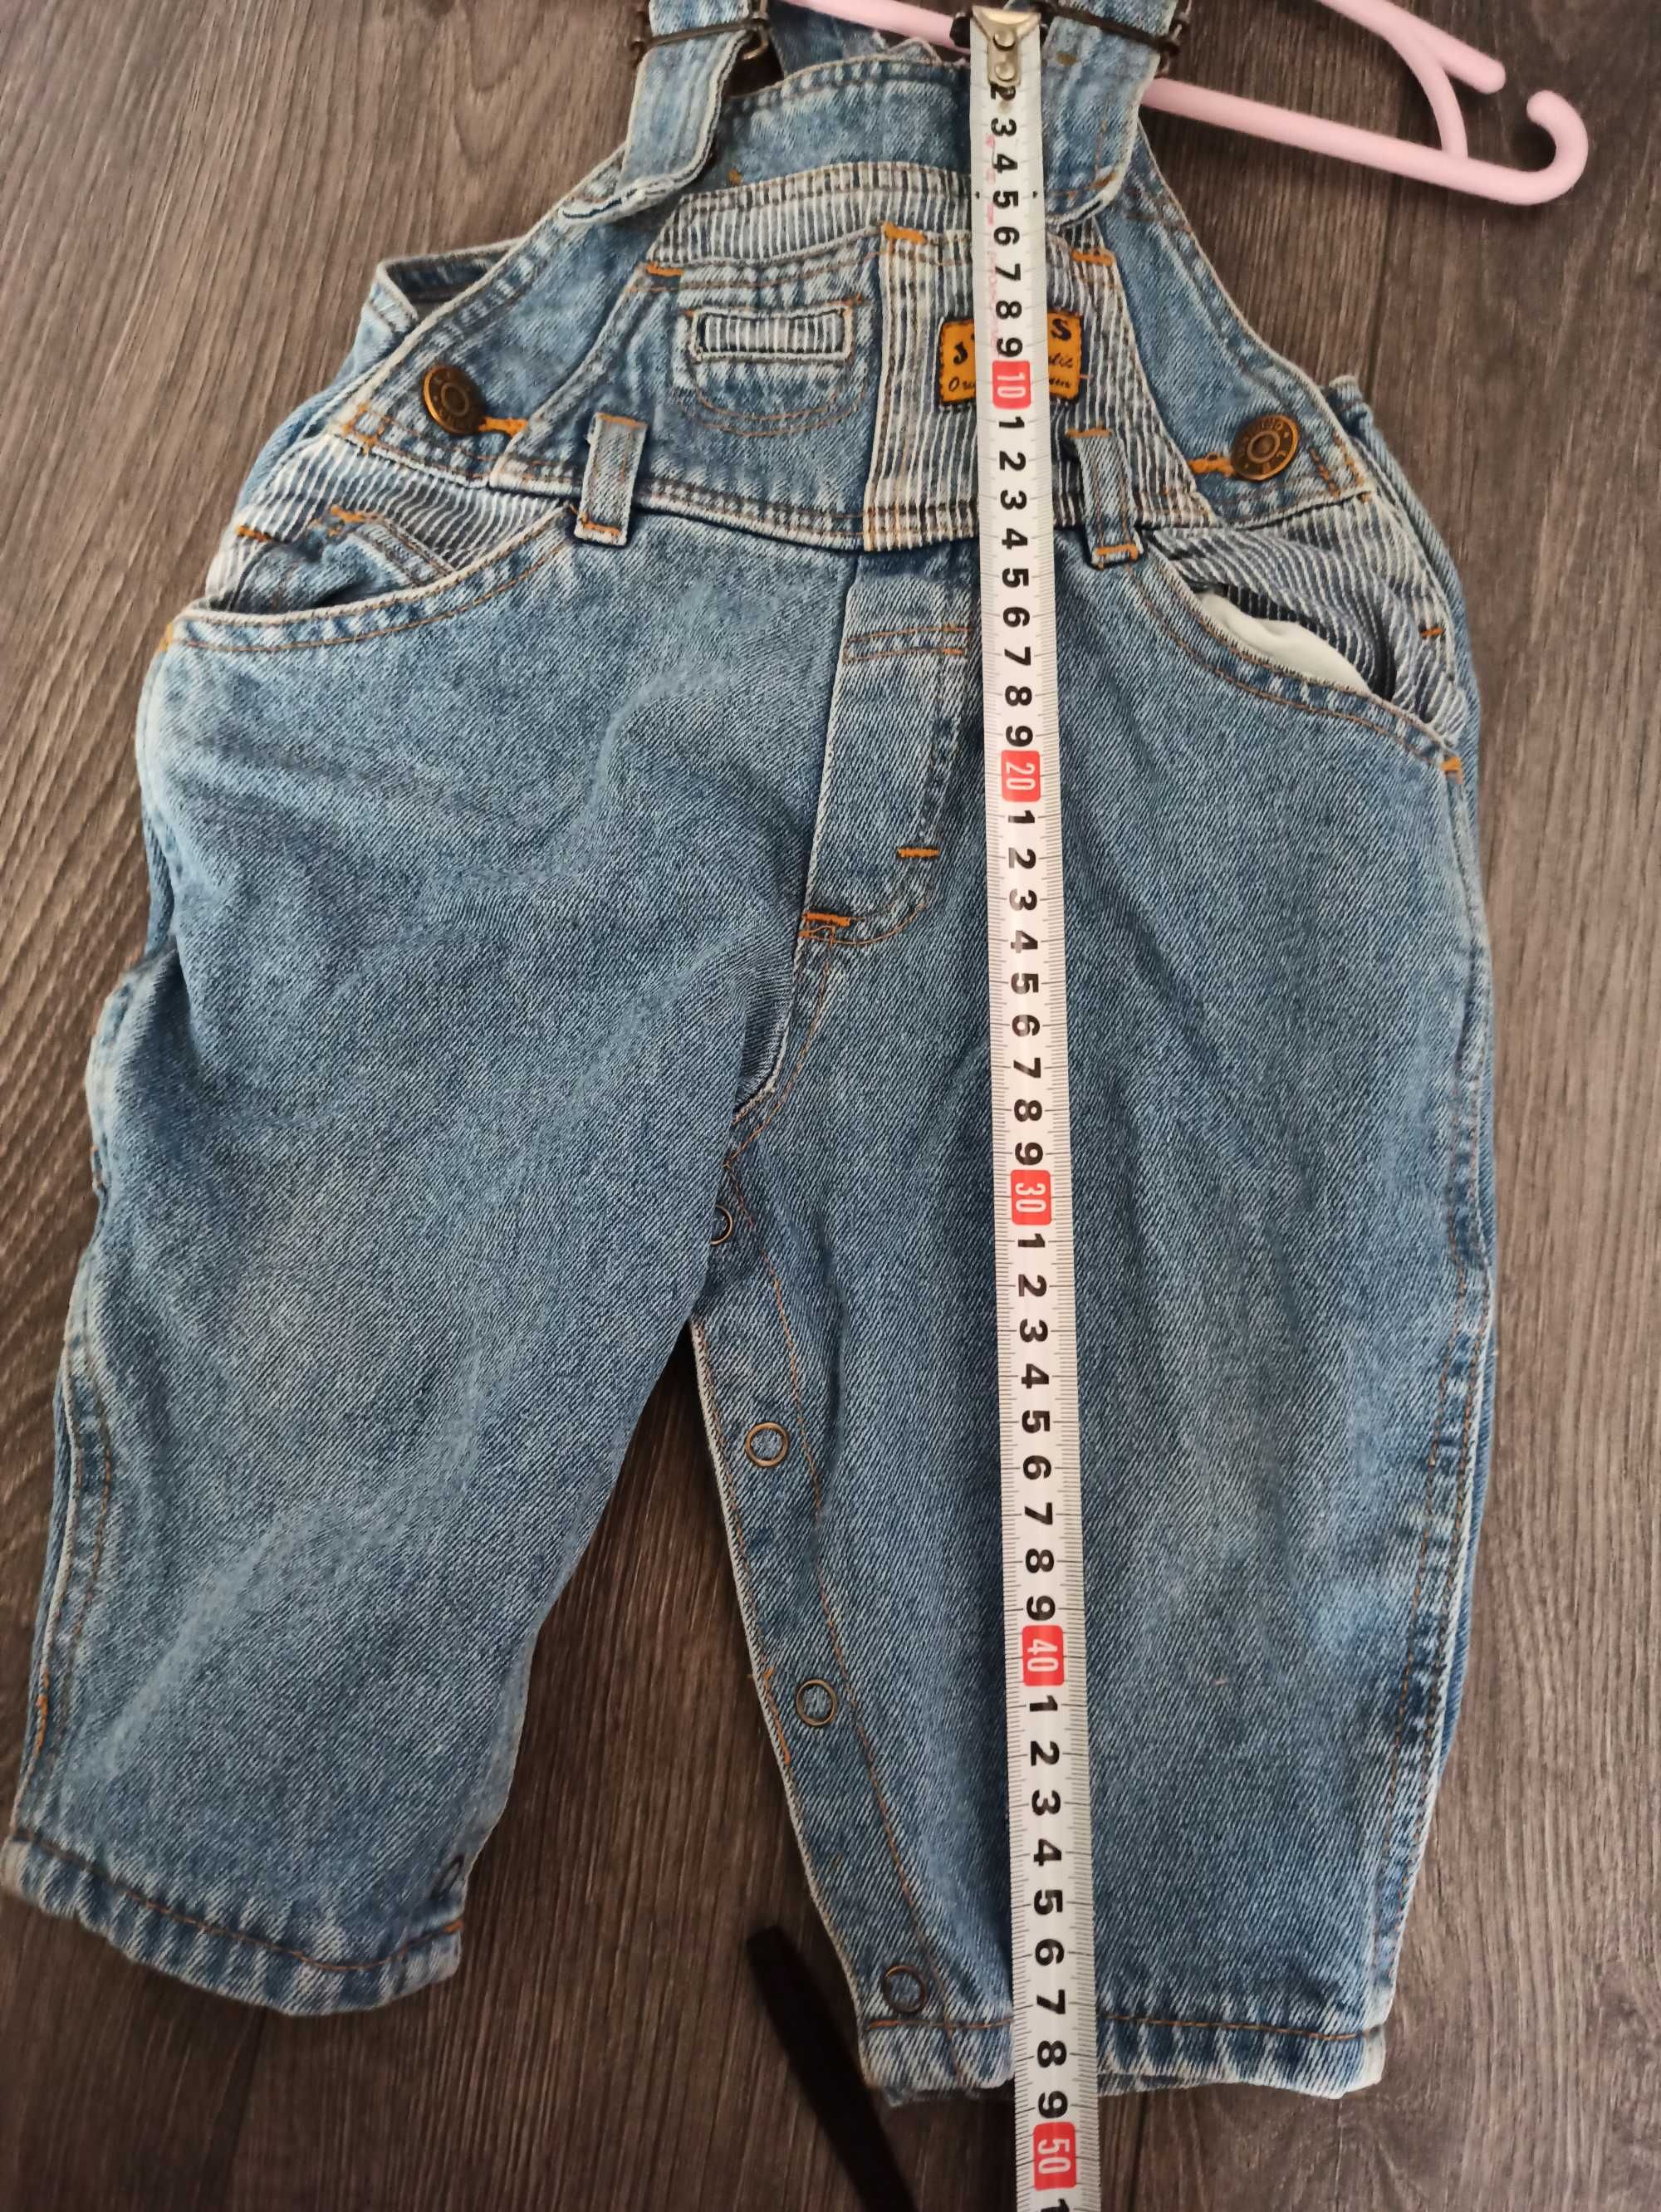 Джинсовые штаны комбинезон для мальчика или девочки 68+